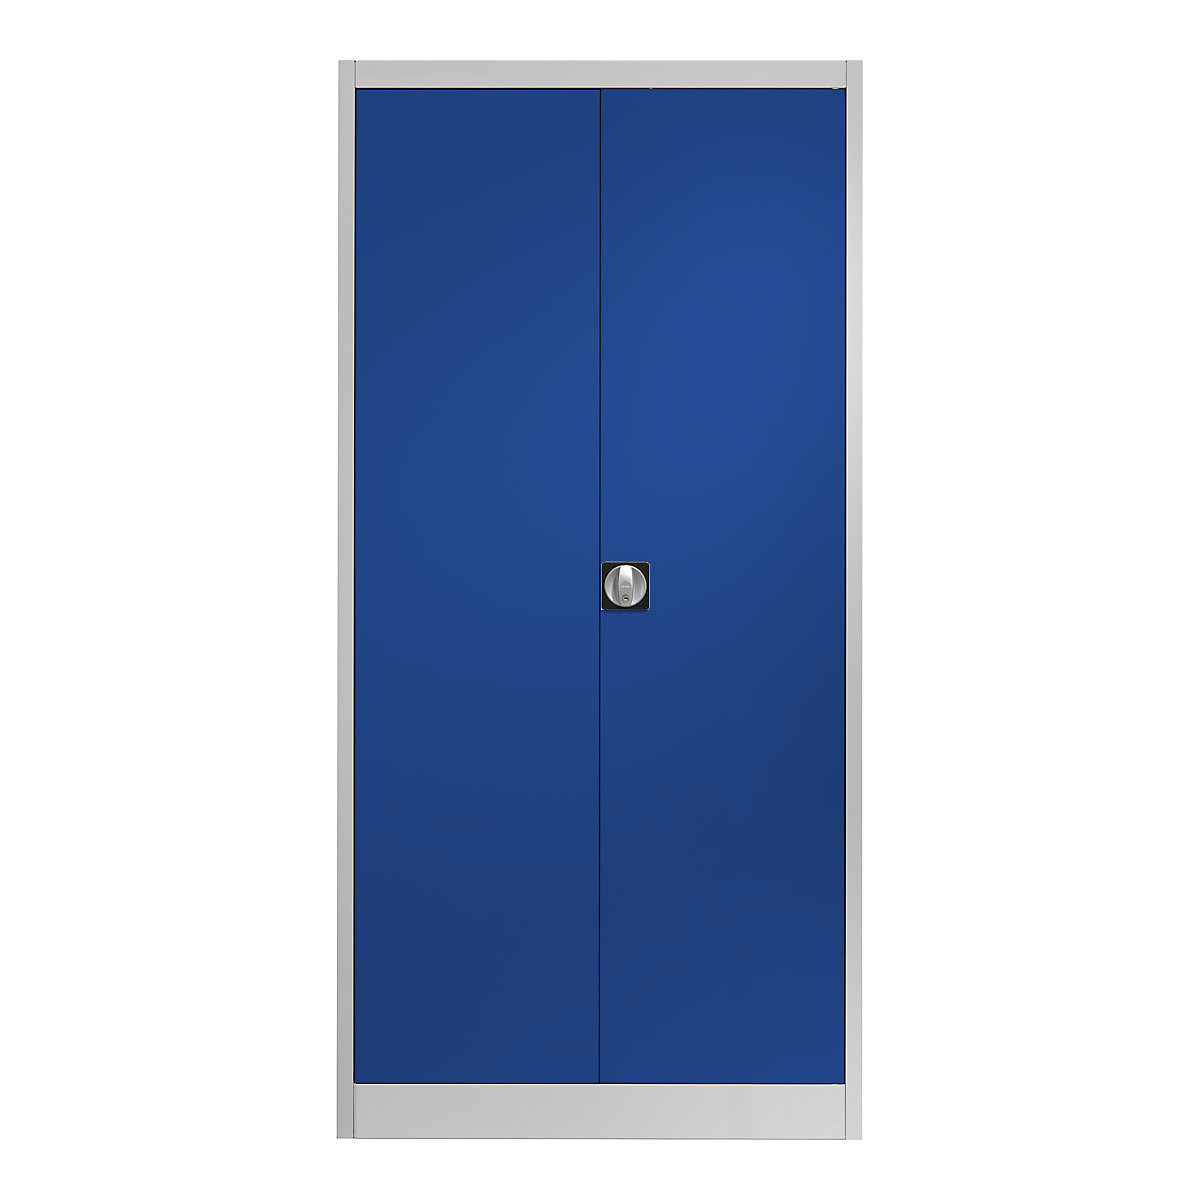 Čelični ormar s krilnim vratima – mauser, 4 police, D 420 mm, u svijetlosivoj / ultramarin boji, od 2 kom.-6